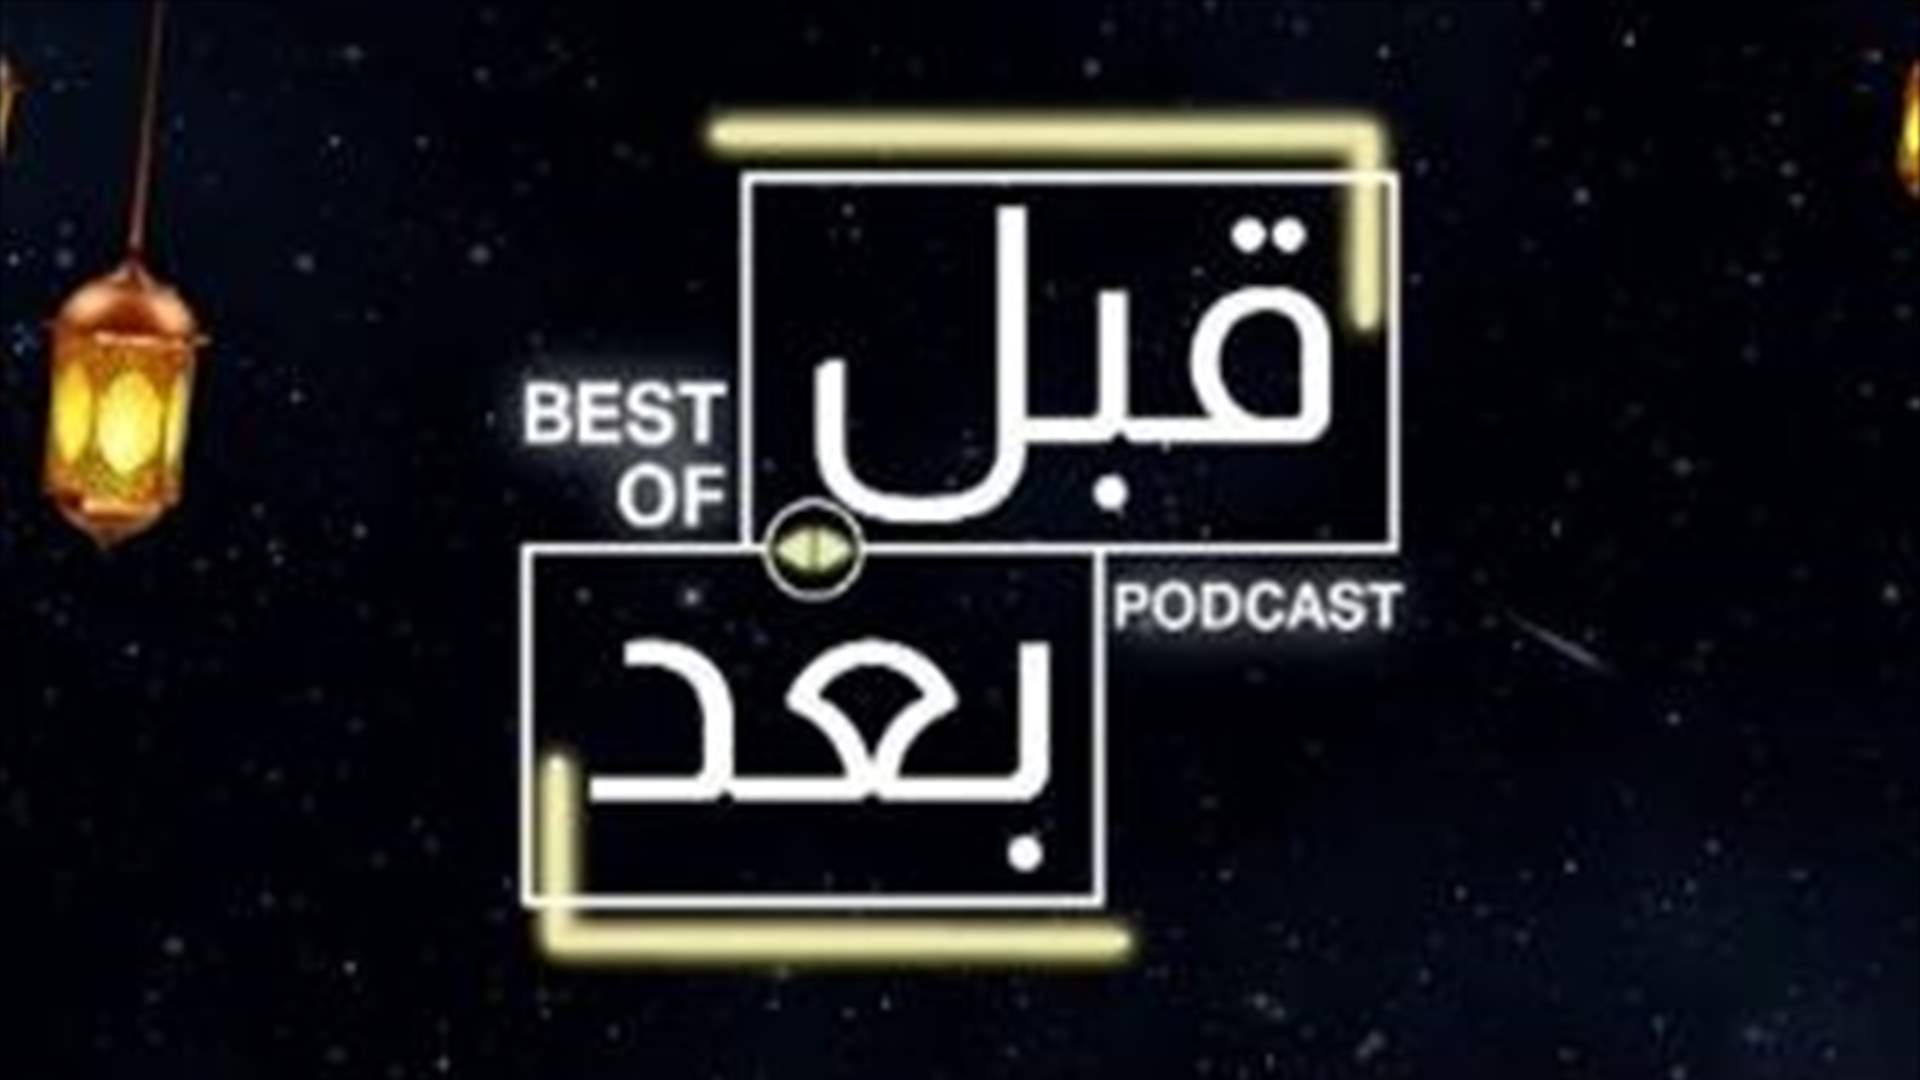 نجوم الدراما اللبنانية والسورية في حلقة واحدة... أبرز التصريحات في Best Of قبل وبعد بودكاست